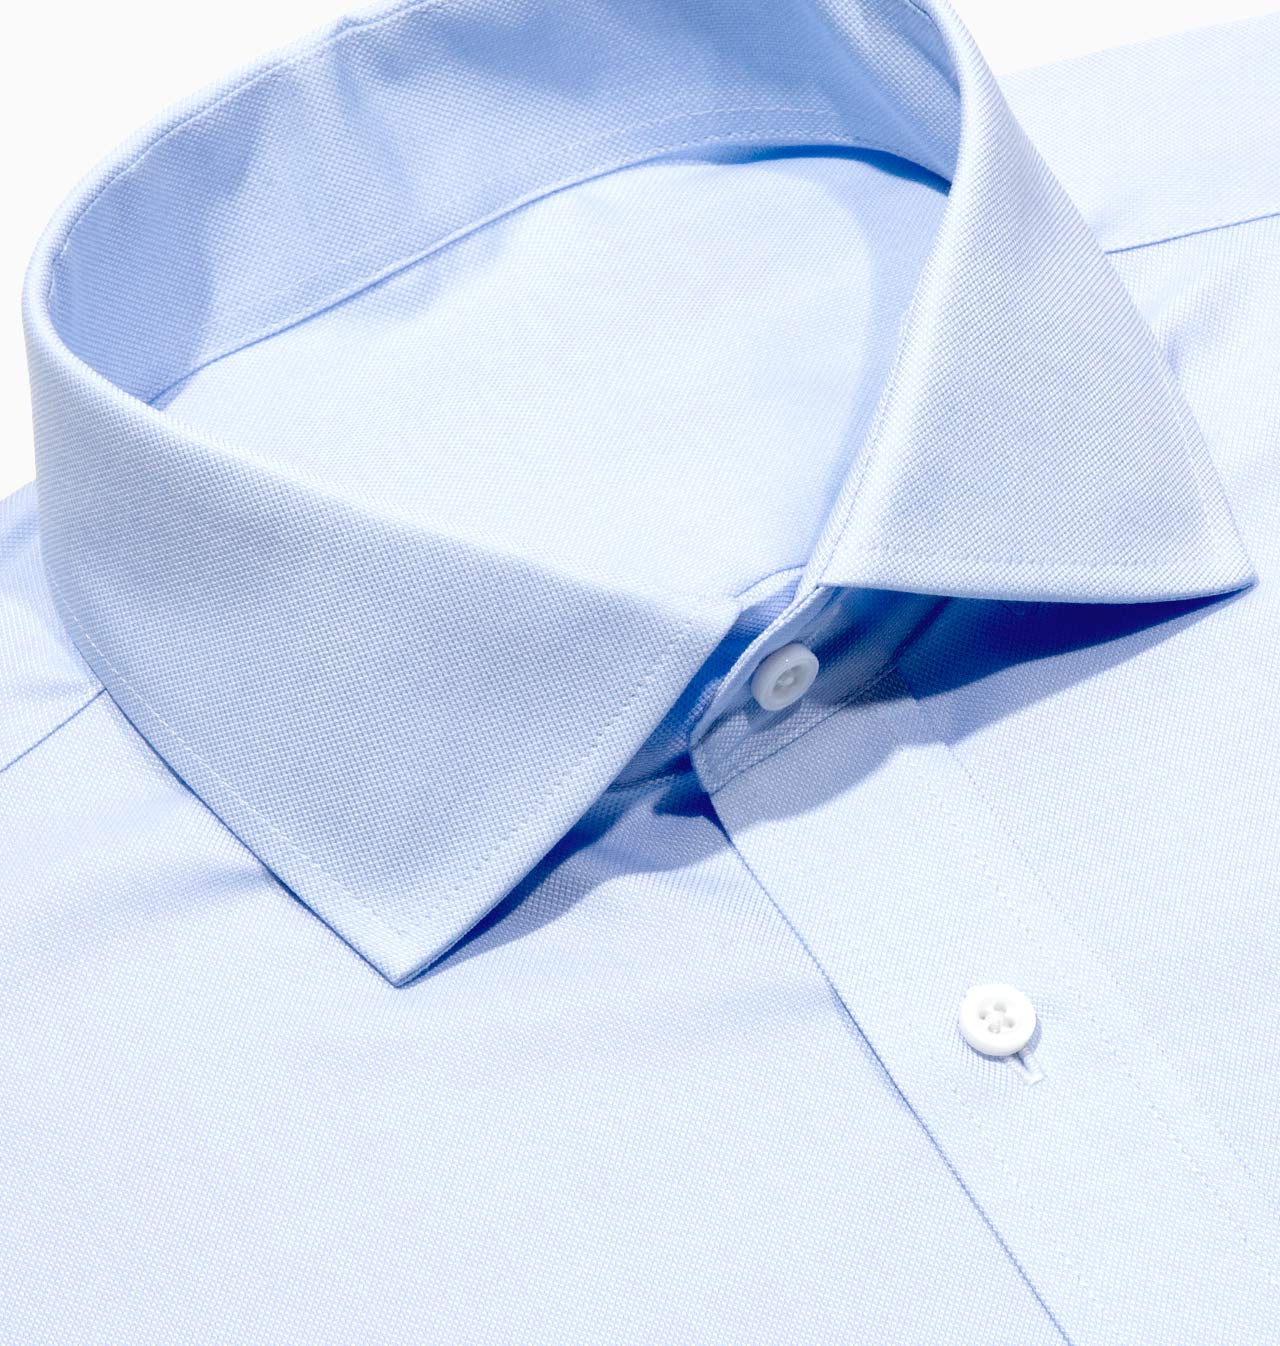 Men’s Tailored Light Blue Pinpoint Oxford Dress Shirt